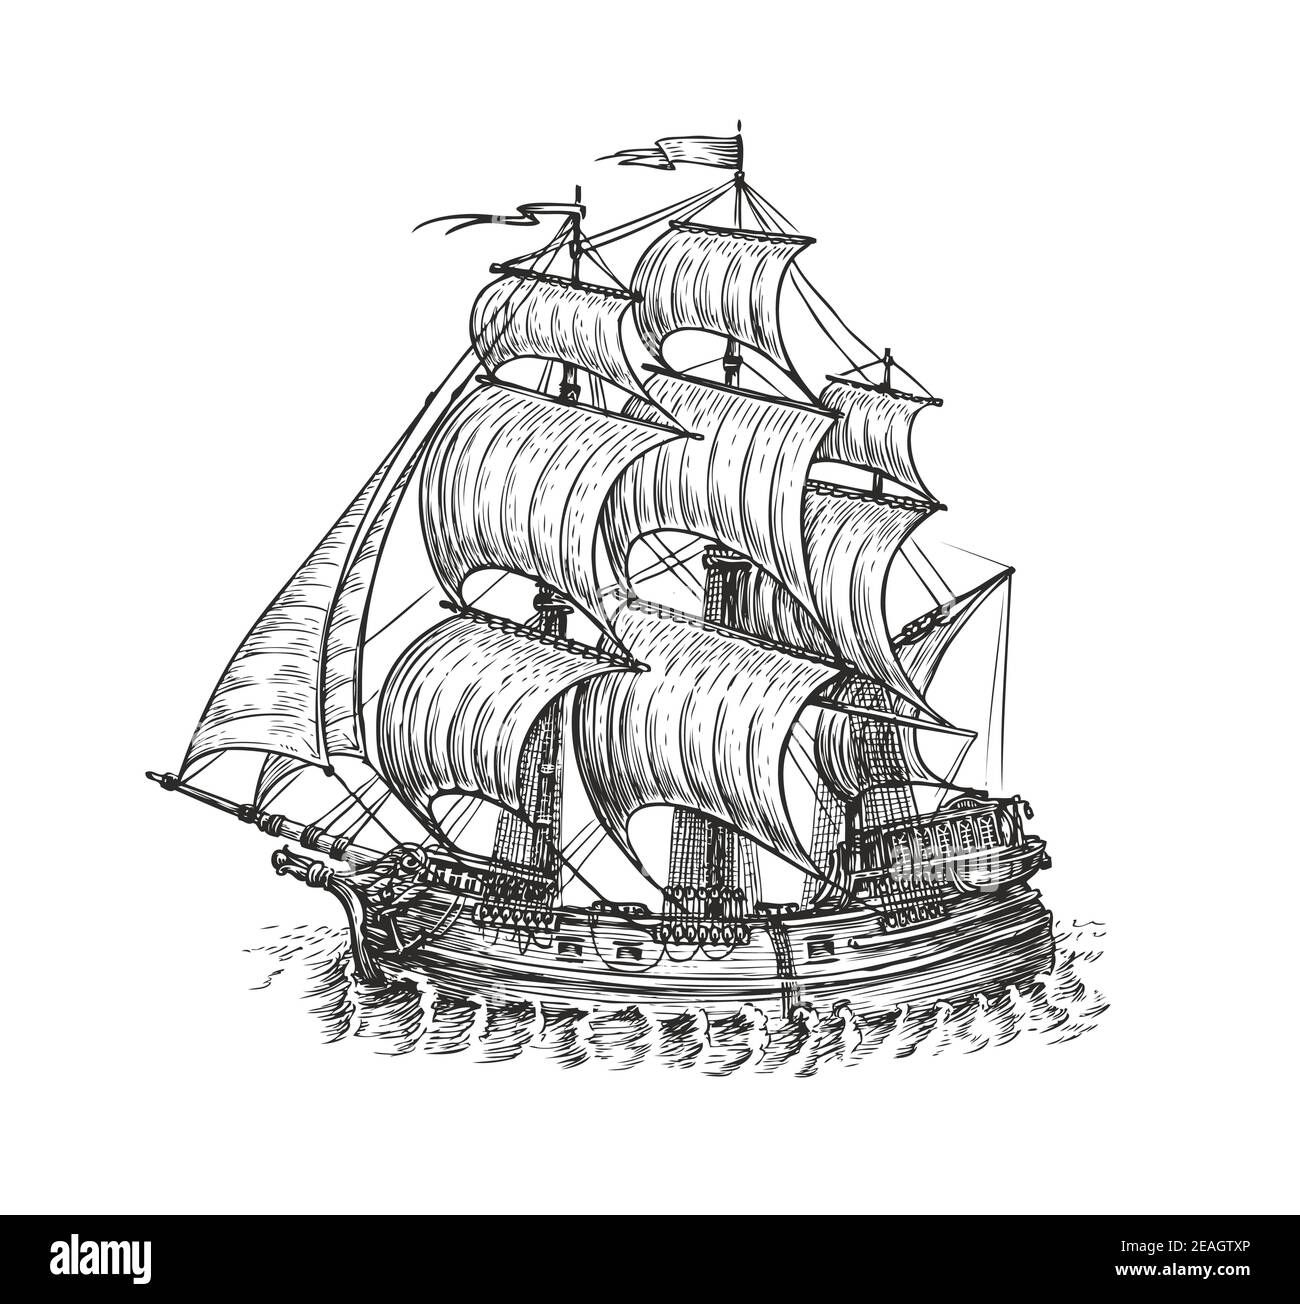 Vintage wooden ship with sails. Navigation sketch vector illustration Stock Vector